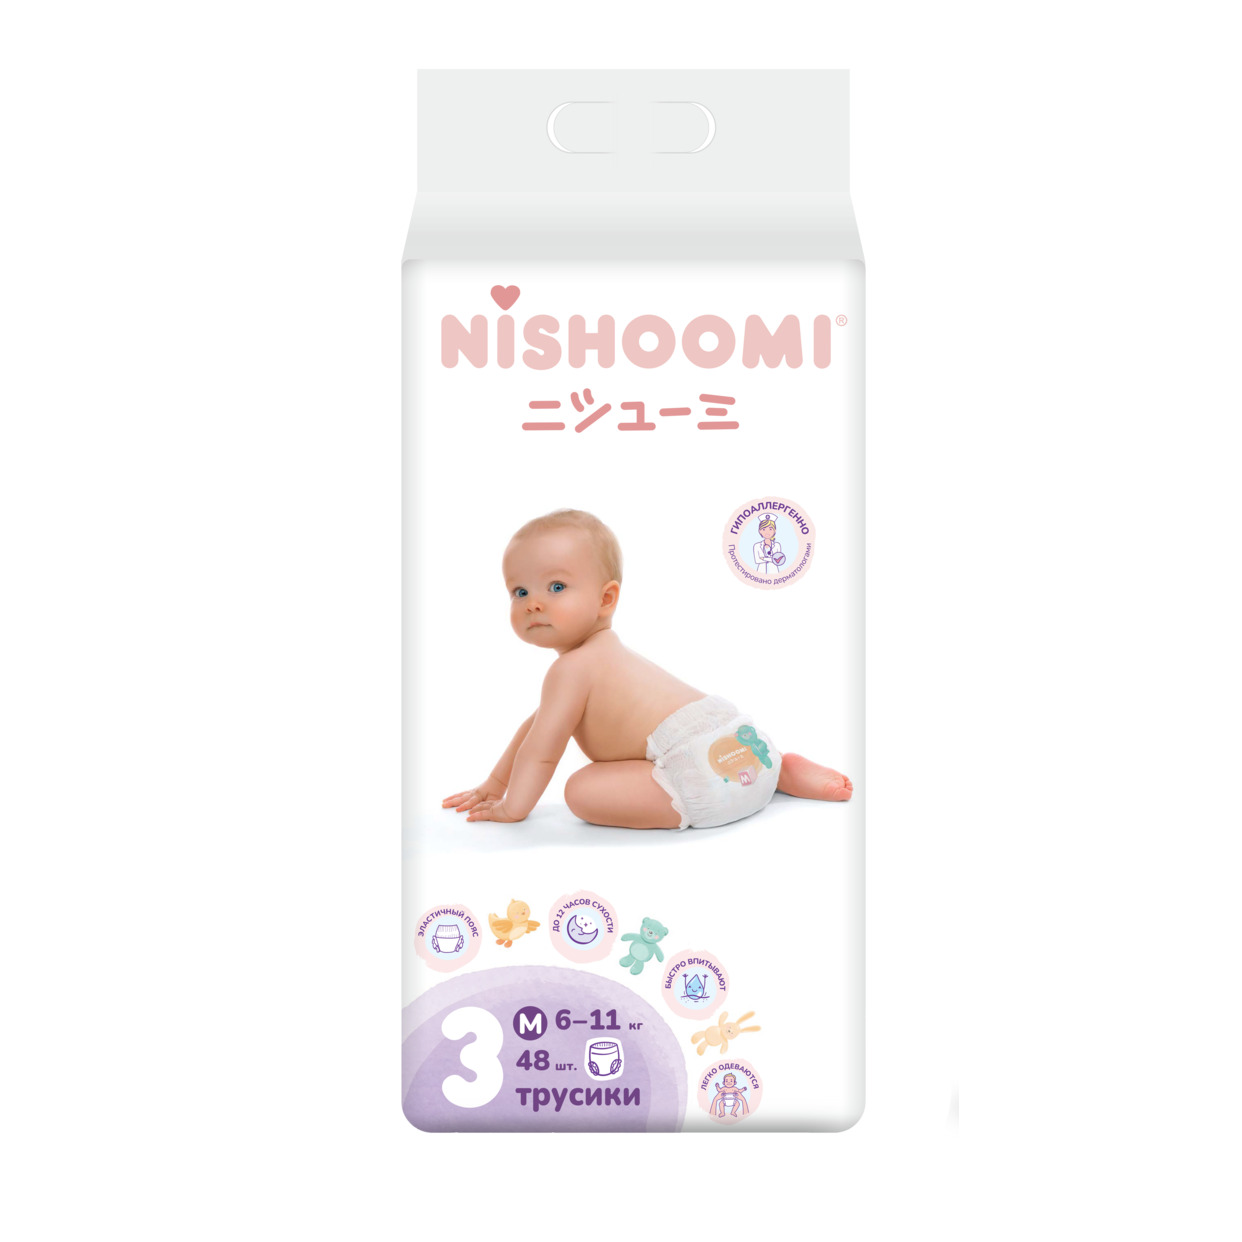 Изделия санитарно-гигиенические для ухода за детьми Nishoomi подгузники-трусики детские одноразовые. Размер «Макси» (М (3)), для дет ей весом 6-11 кг, 48 штук в уп.